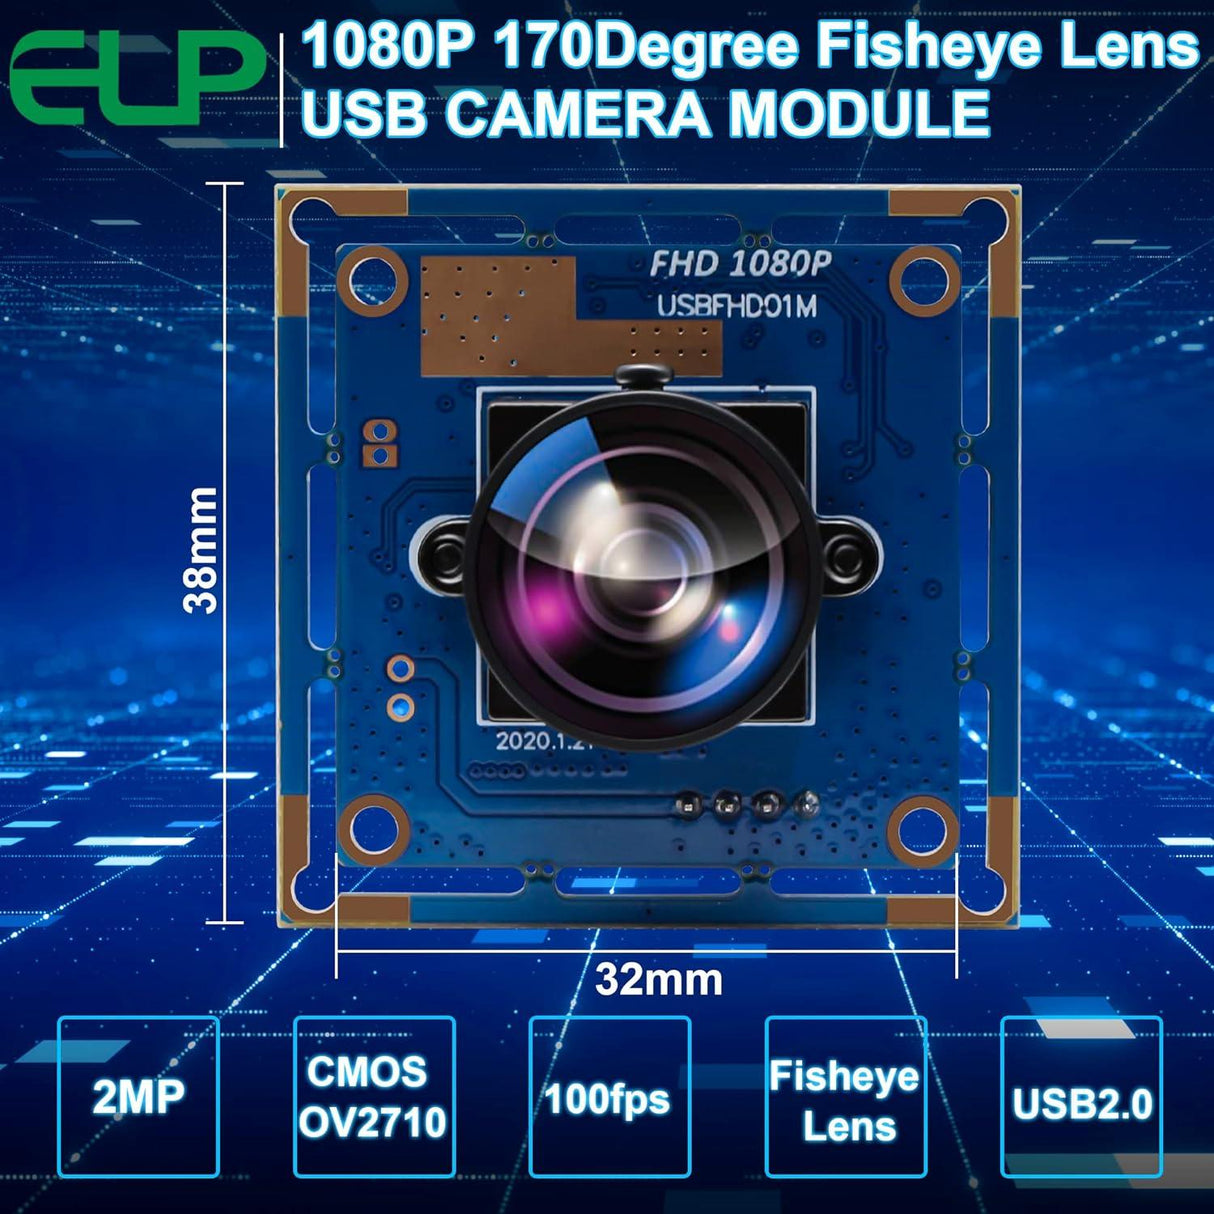 ELP 170 fokos Fisheye Lencsés USB Kamera, 1080p HD Felbontás, OV2710 CMOS, 2 Megapixeles Nagy Sebességű Mini Kamera Modul Robotokhoz, ATM-ekhez és Infókioszkokhoz - Outlet24